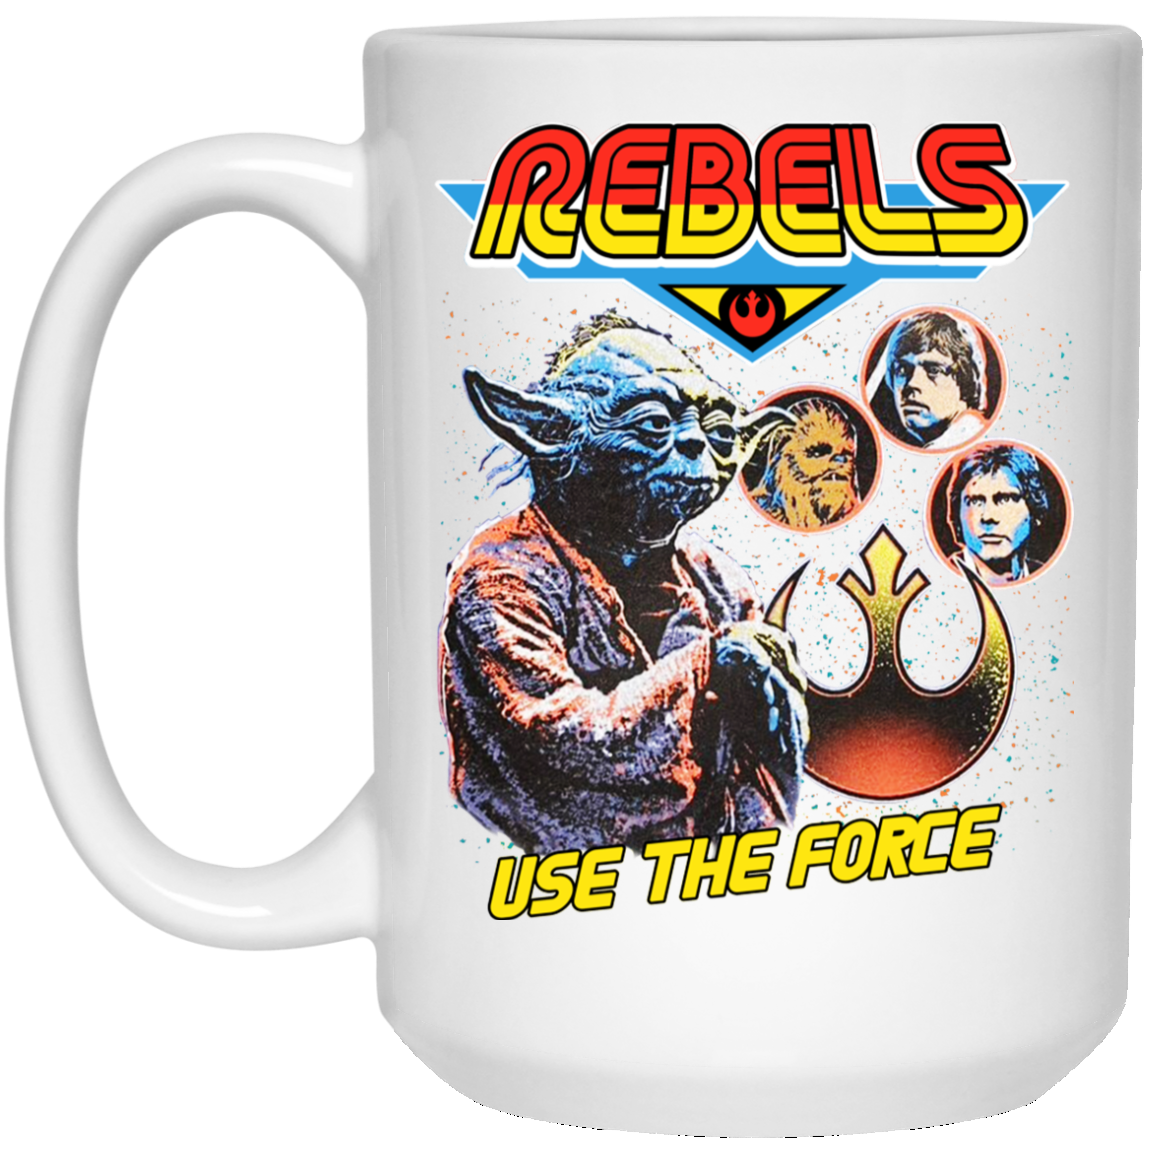 Star Wars Yoda 18 oz Oval Mug